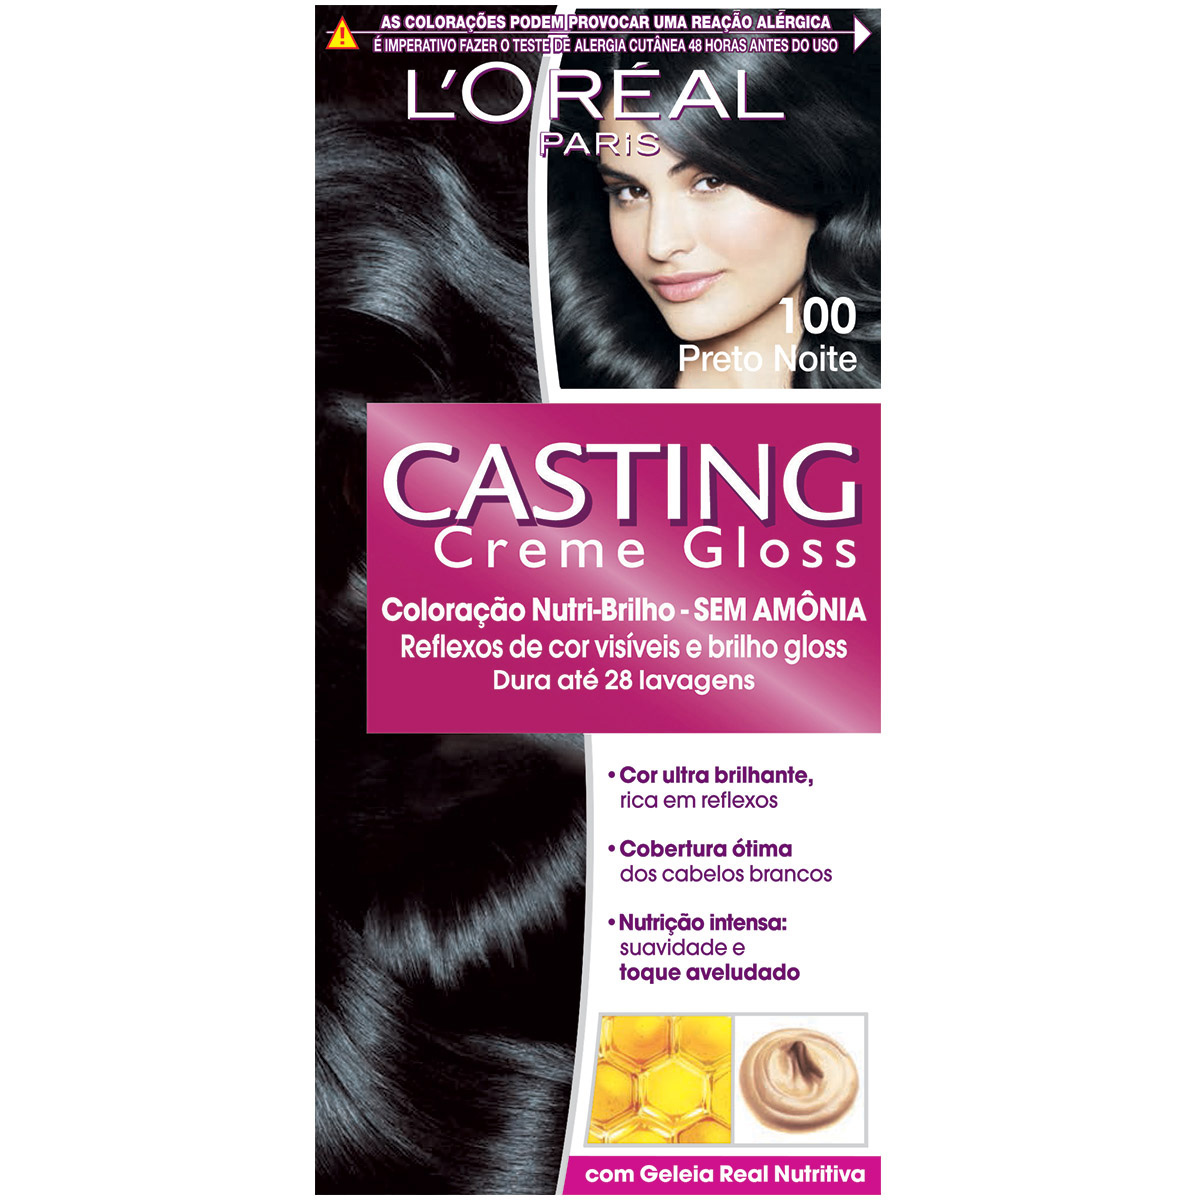 Coloração Permanente Casting Creme Gloss N° 100 Preto Noite L'Oréal 1 Unidade